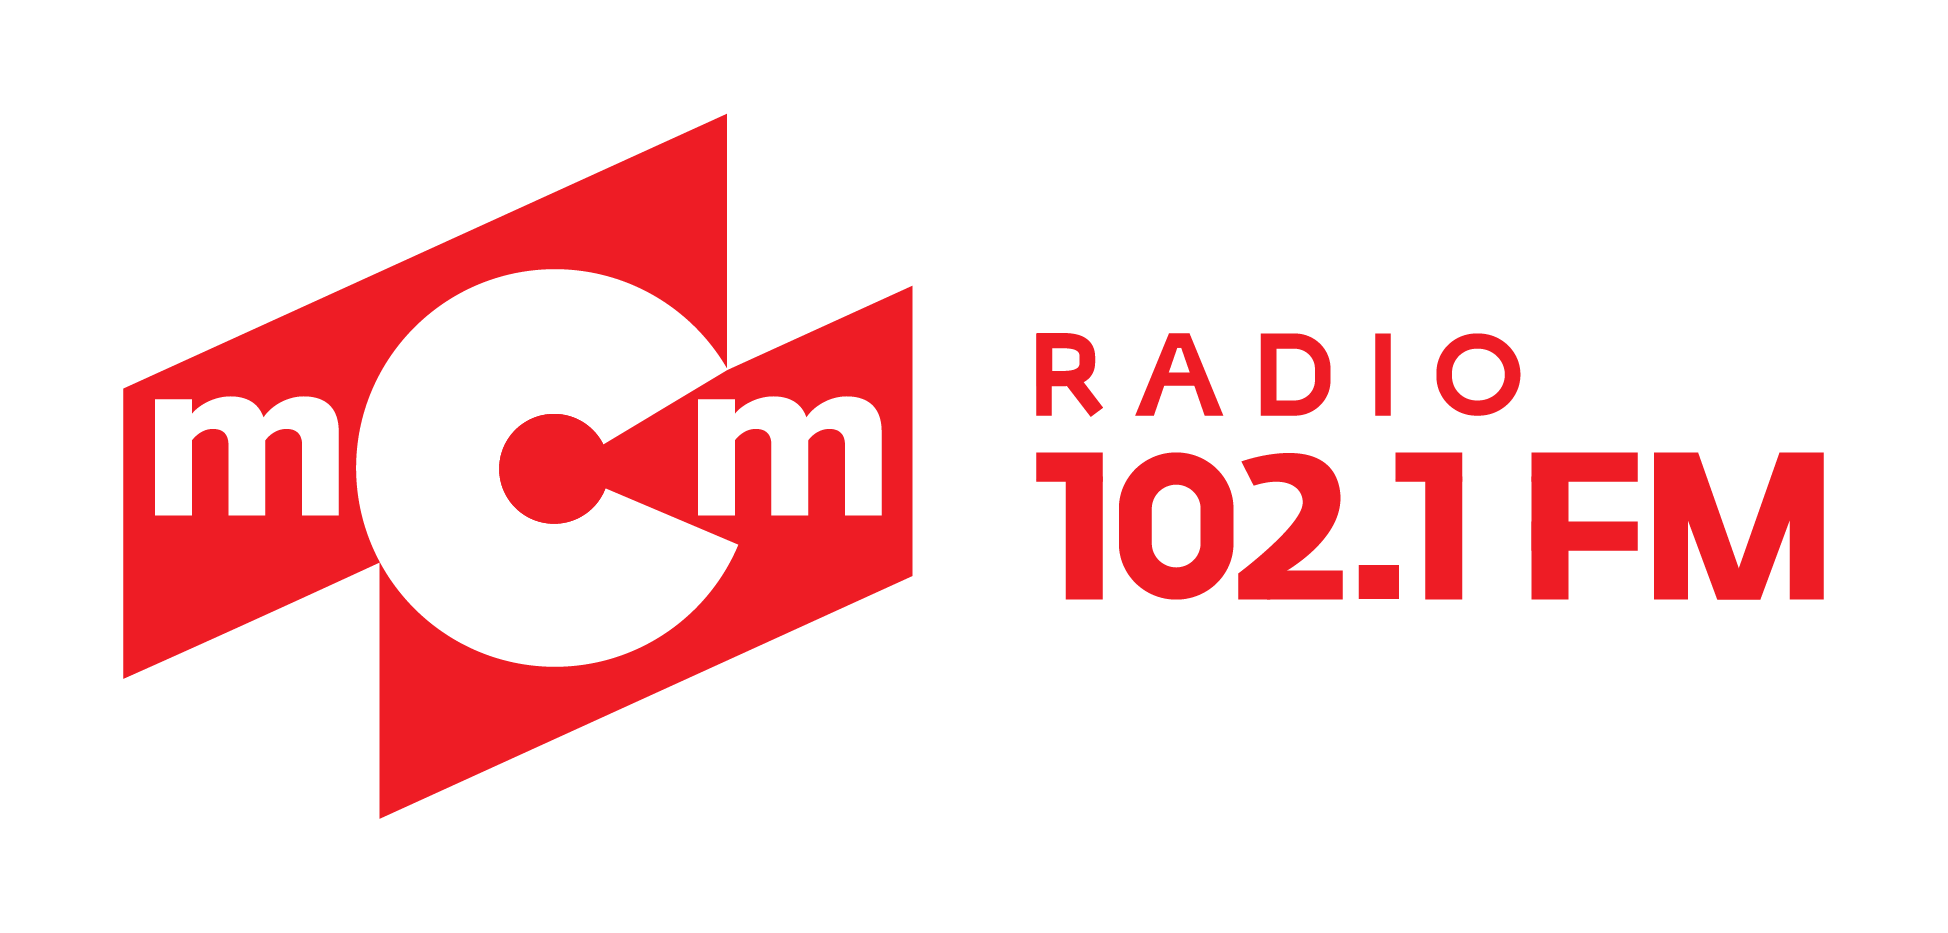 Радио торок. MCM радио. Радио МСМ логотип. МСМ радио Иркутск. Логотип радио МСМ 102.1.